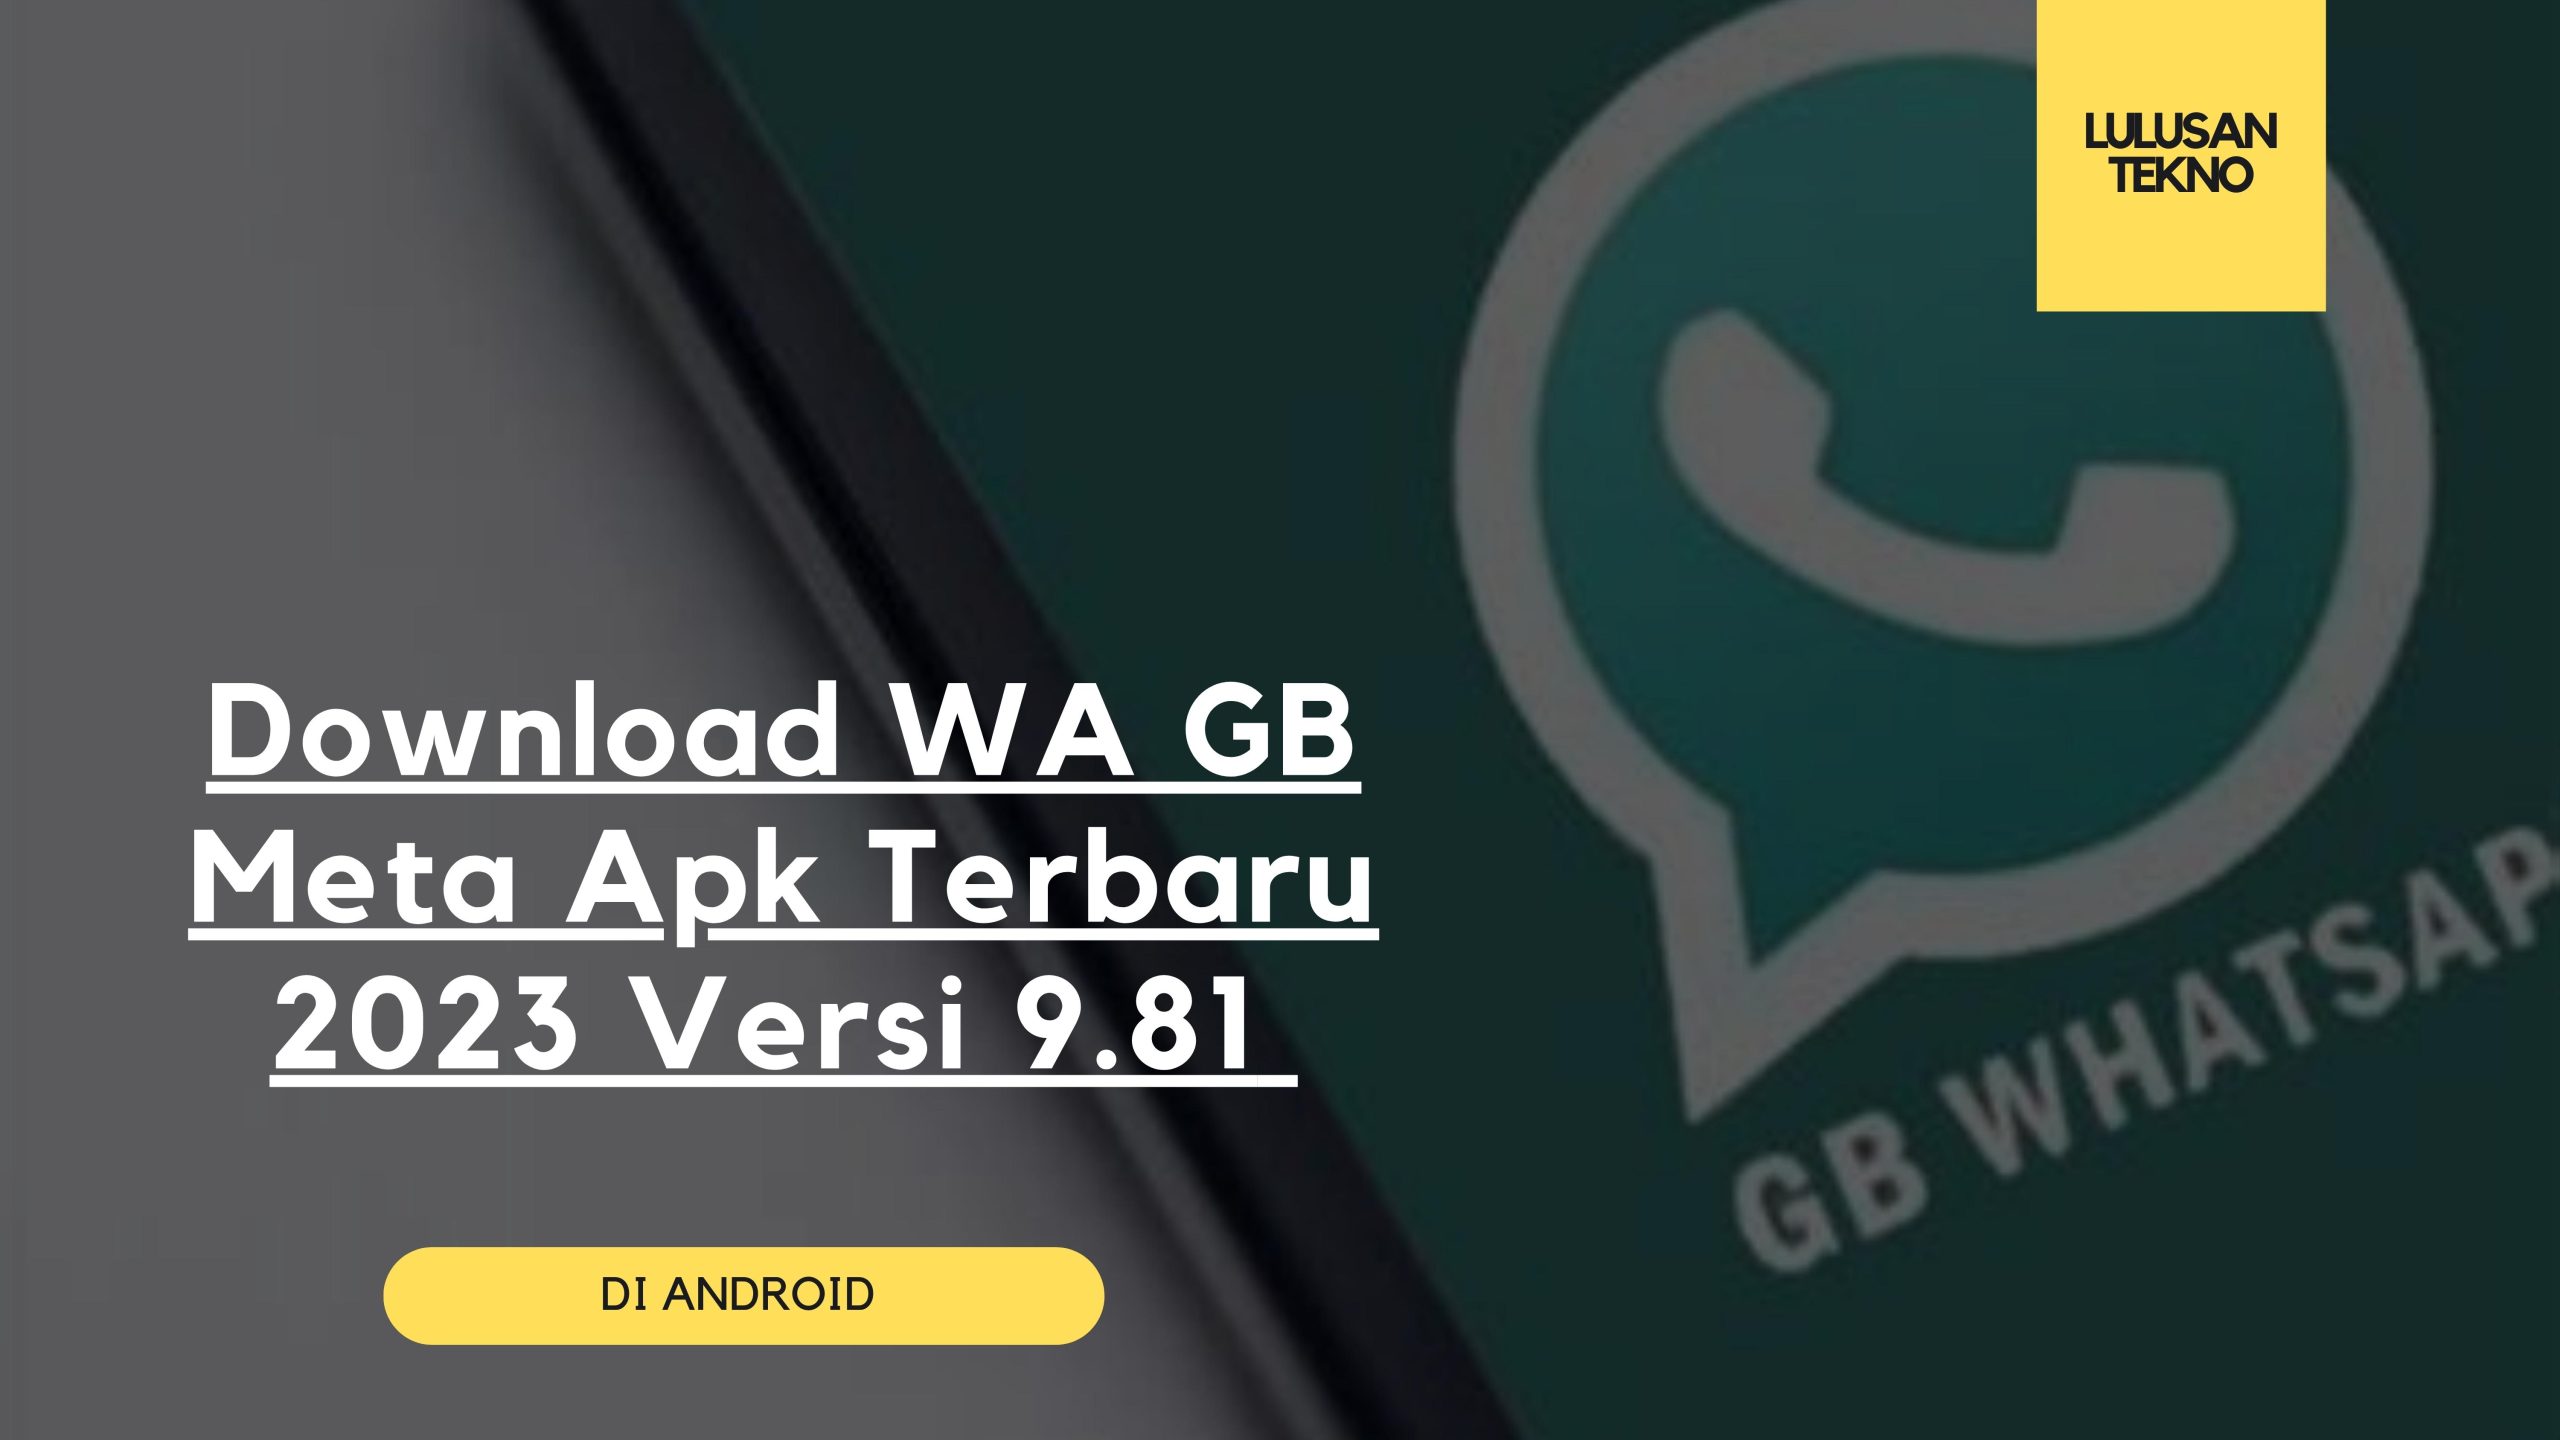 Download WA GB Meta Apk Terbaru 2023 Versi 9.81